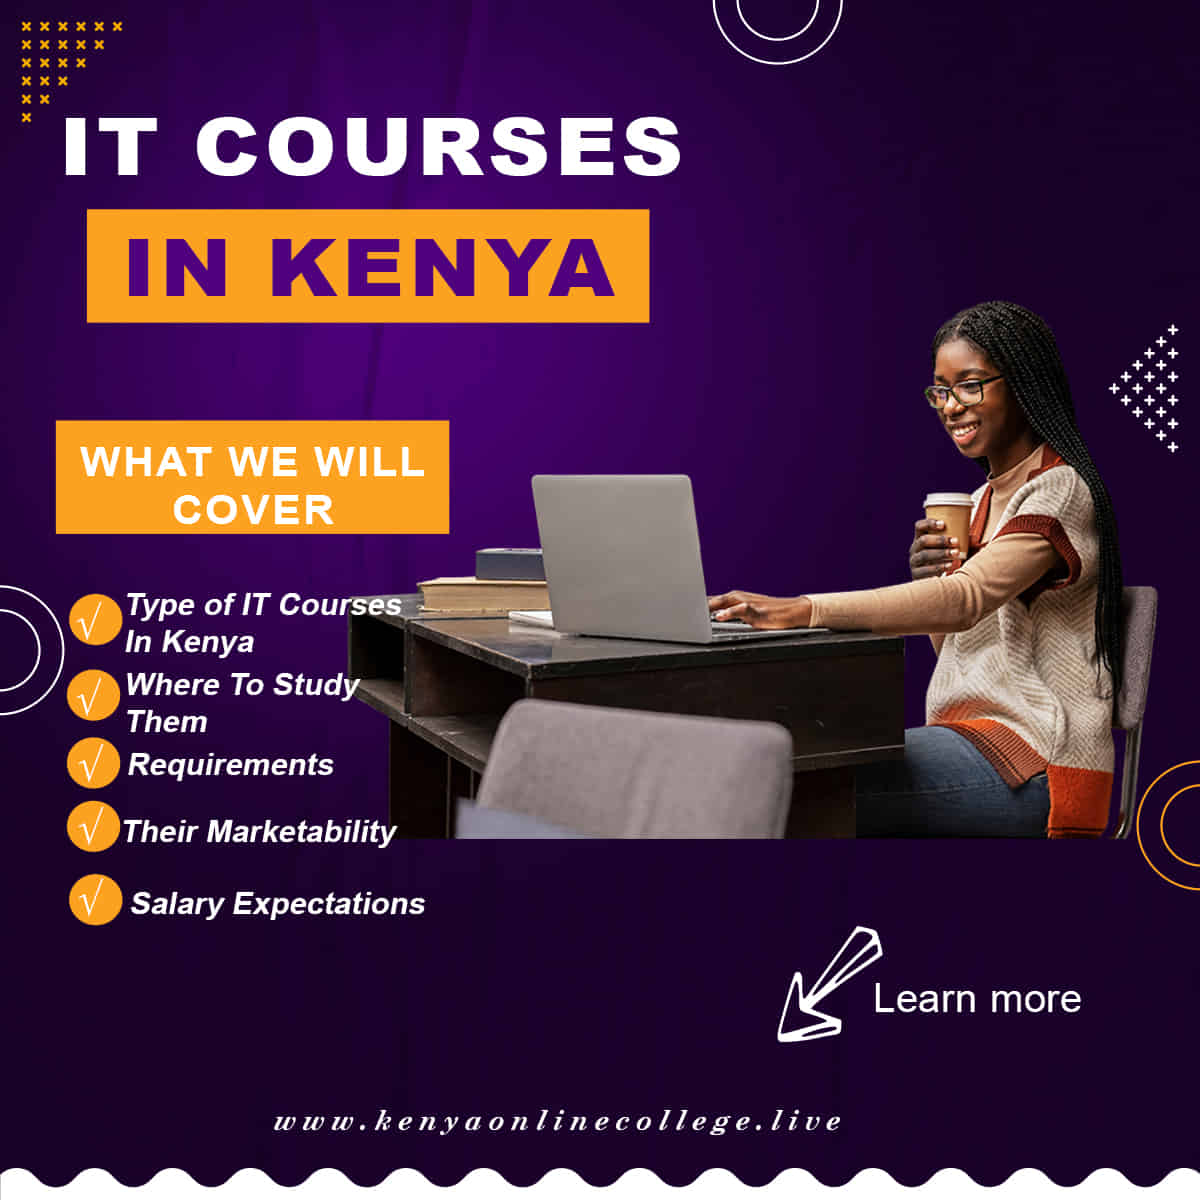 IT courses in Kenya